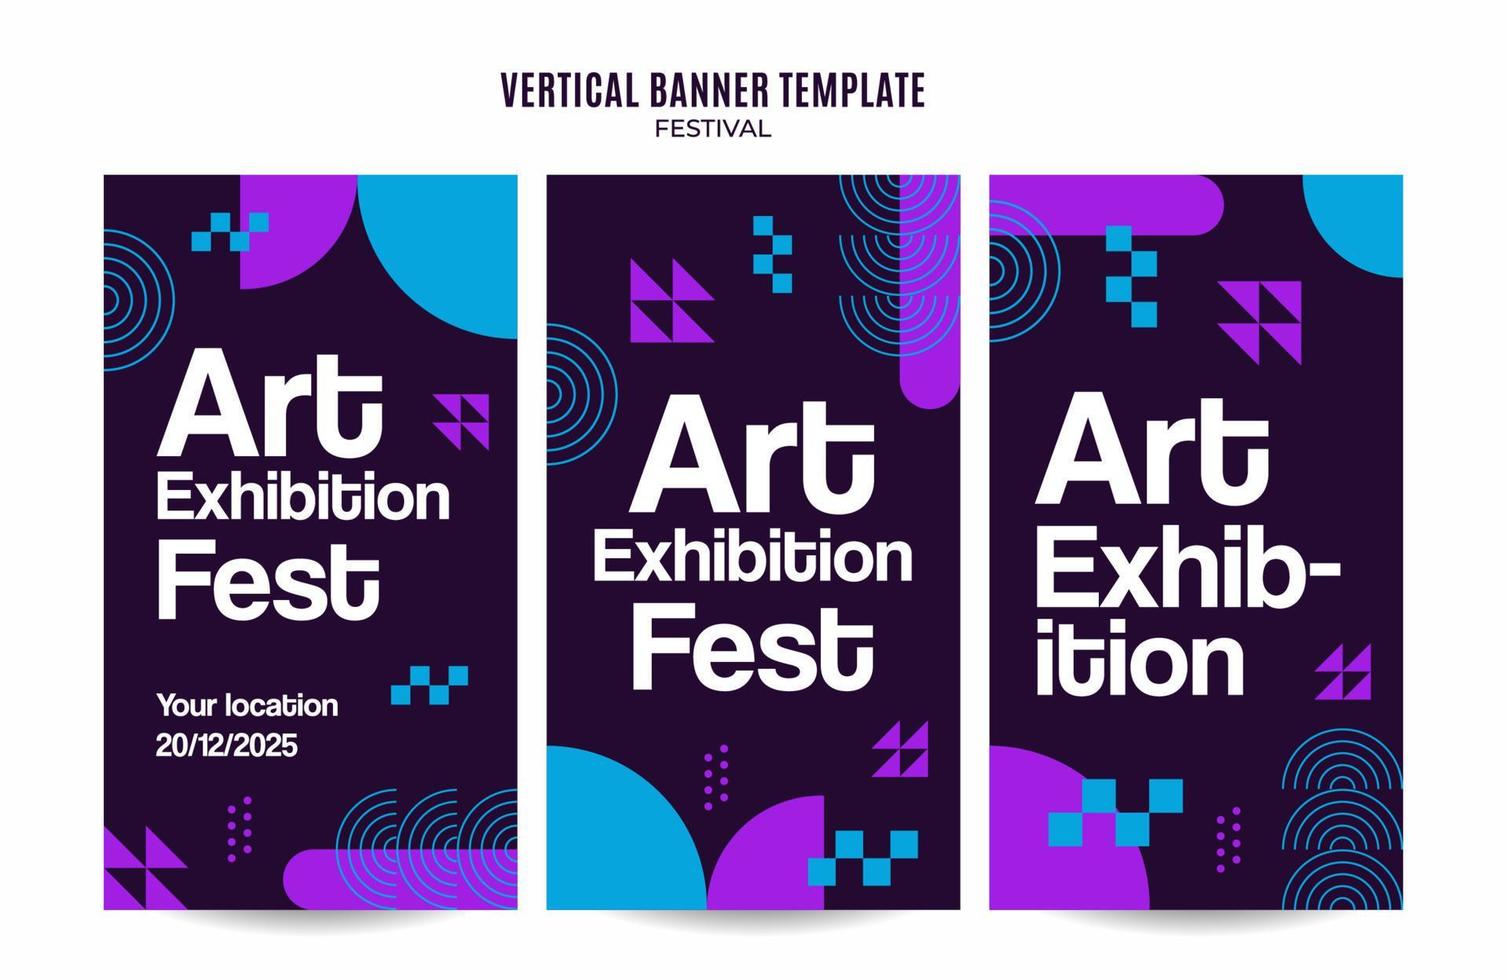 festival-webbanner für vertikale plakate, banner, raumfläche und hintergrund der sozialen medien vektor